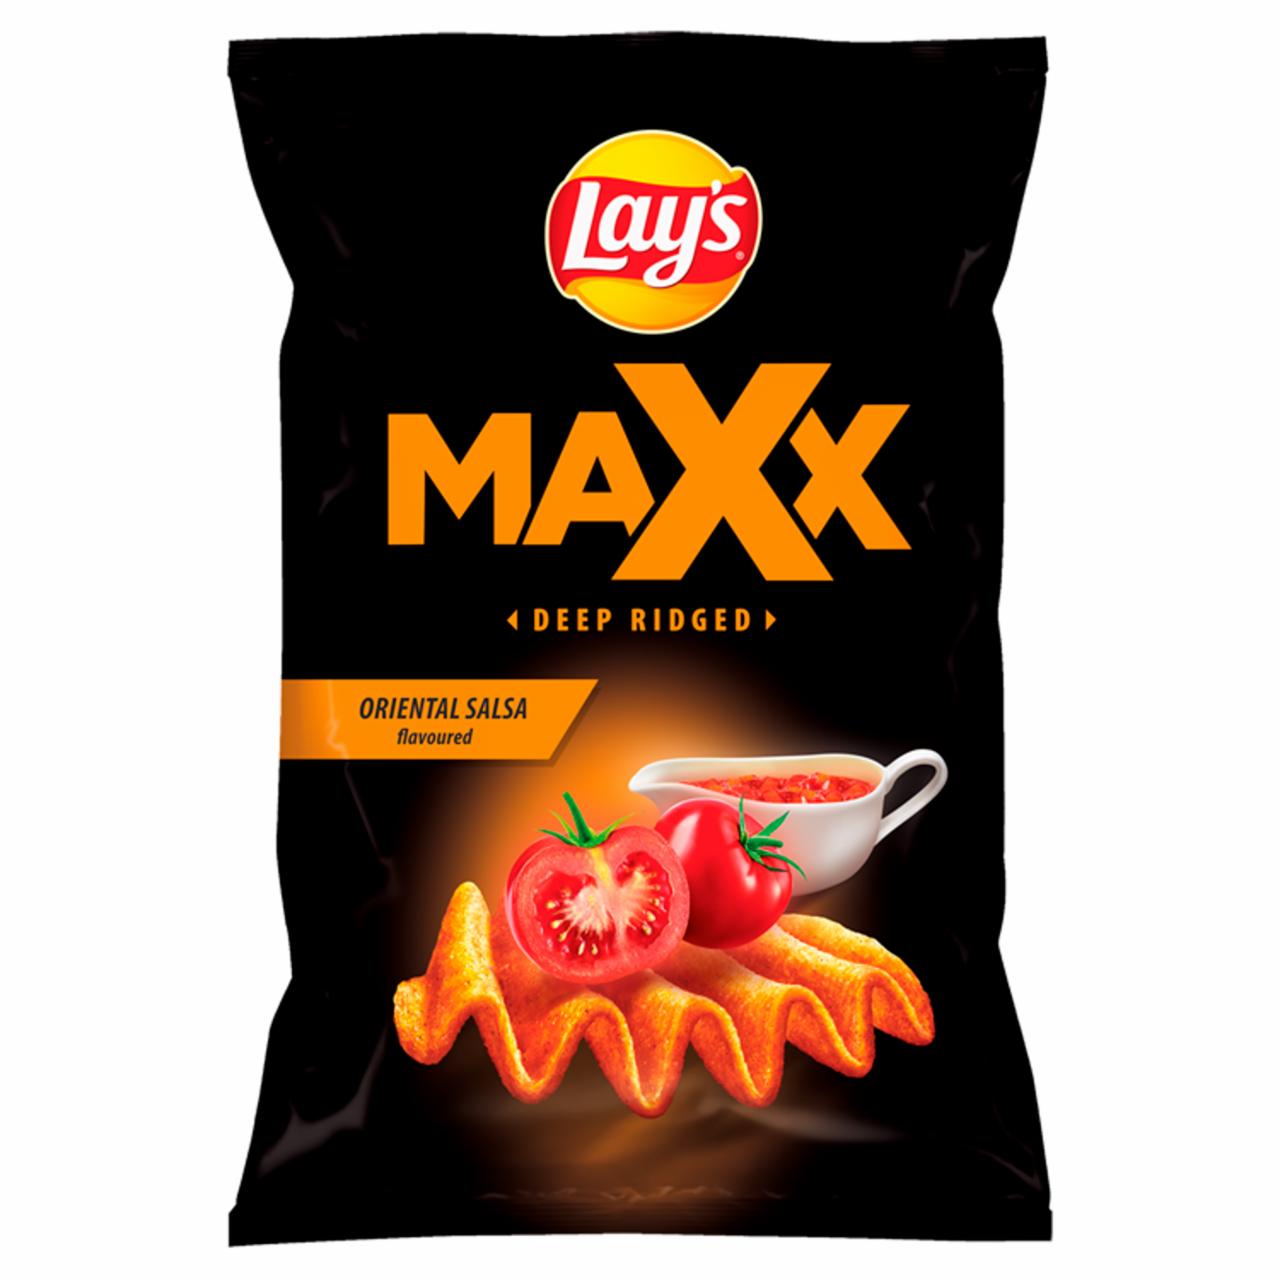 Zdjęcia - Chipsy ziemniaczane o smaku orientalnej salsy Lay's maxx